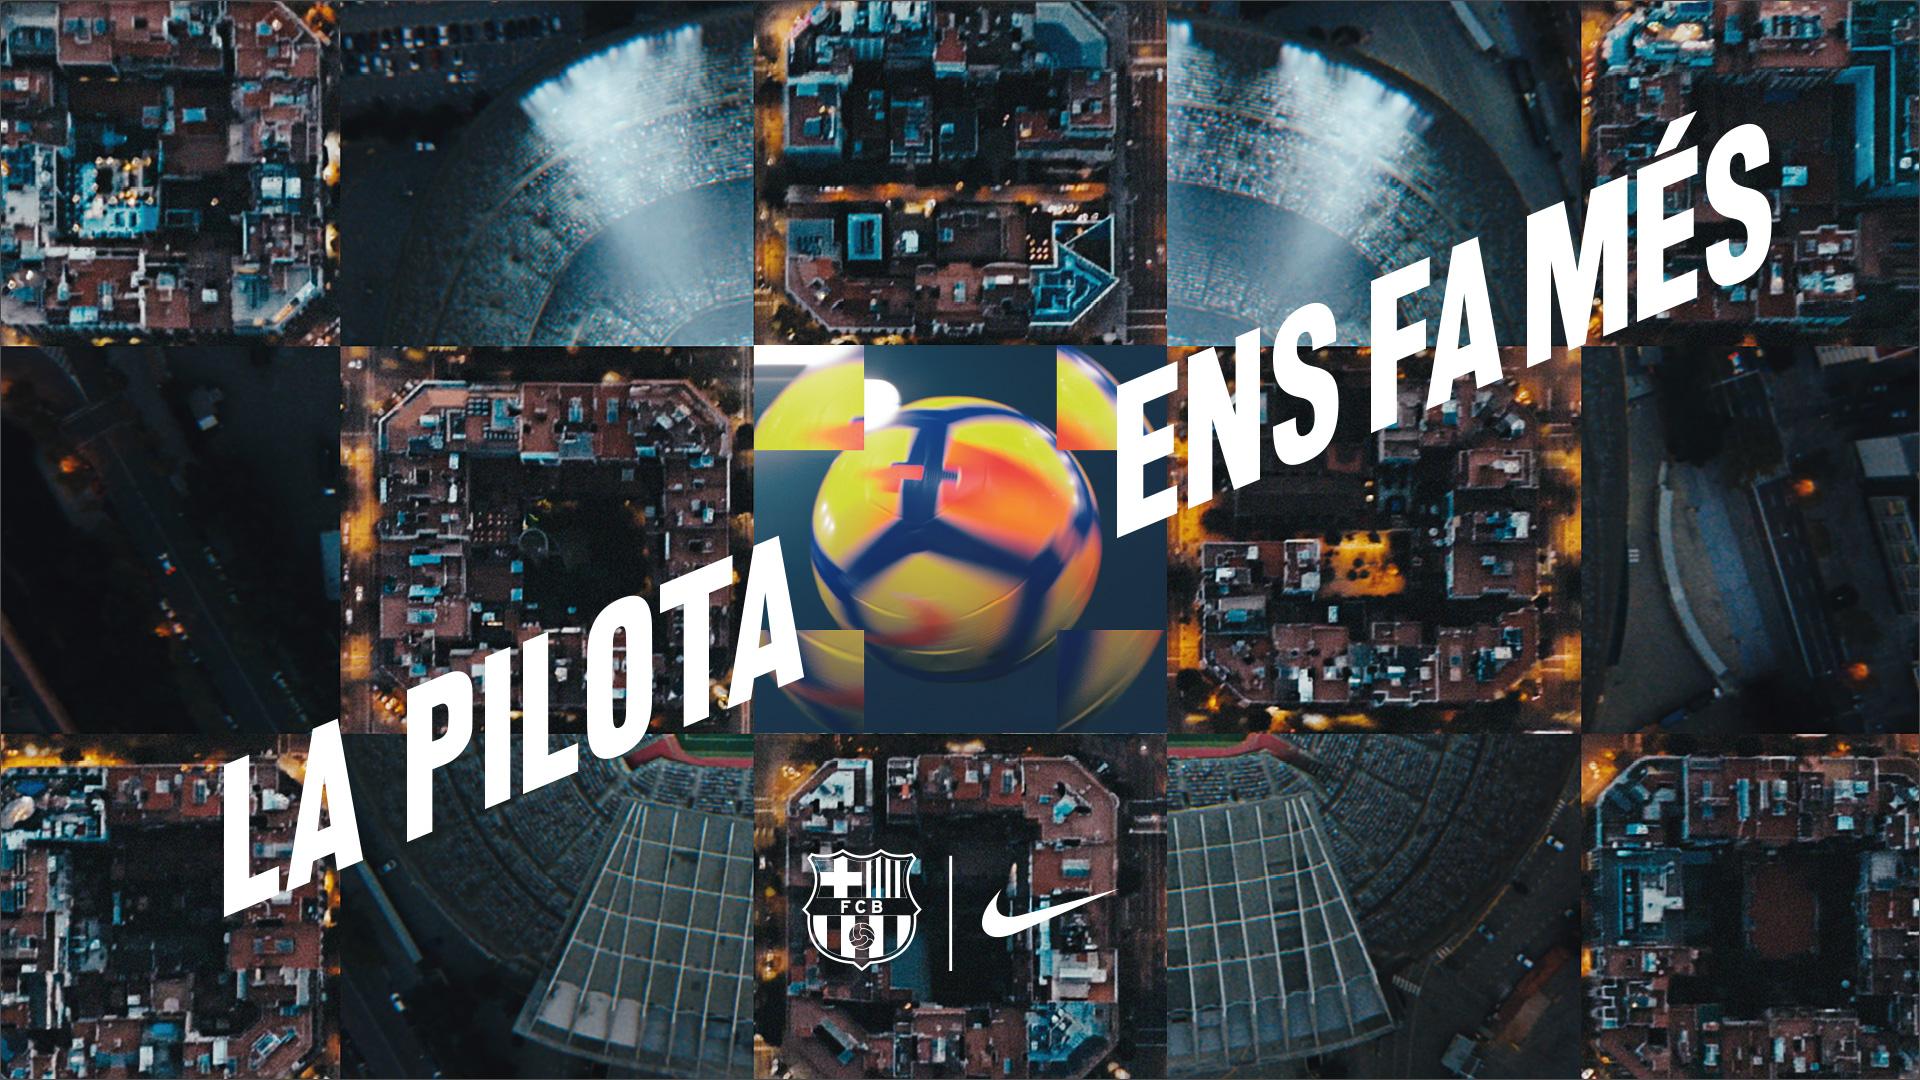 Económico paleta sensación FC Barcelona and Nike launch 'The ball makes us more' campaign